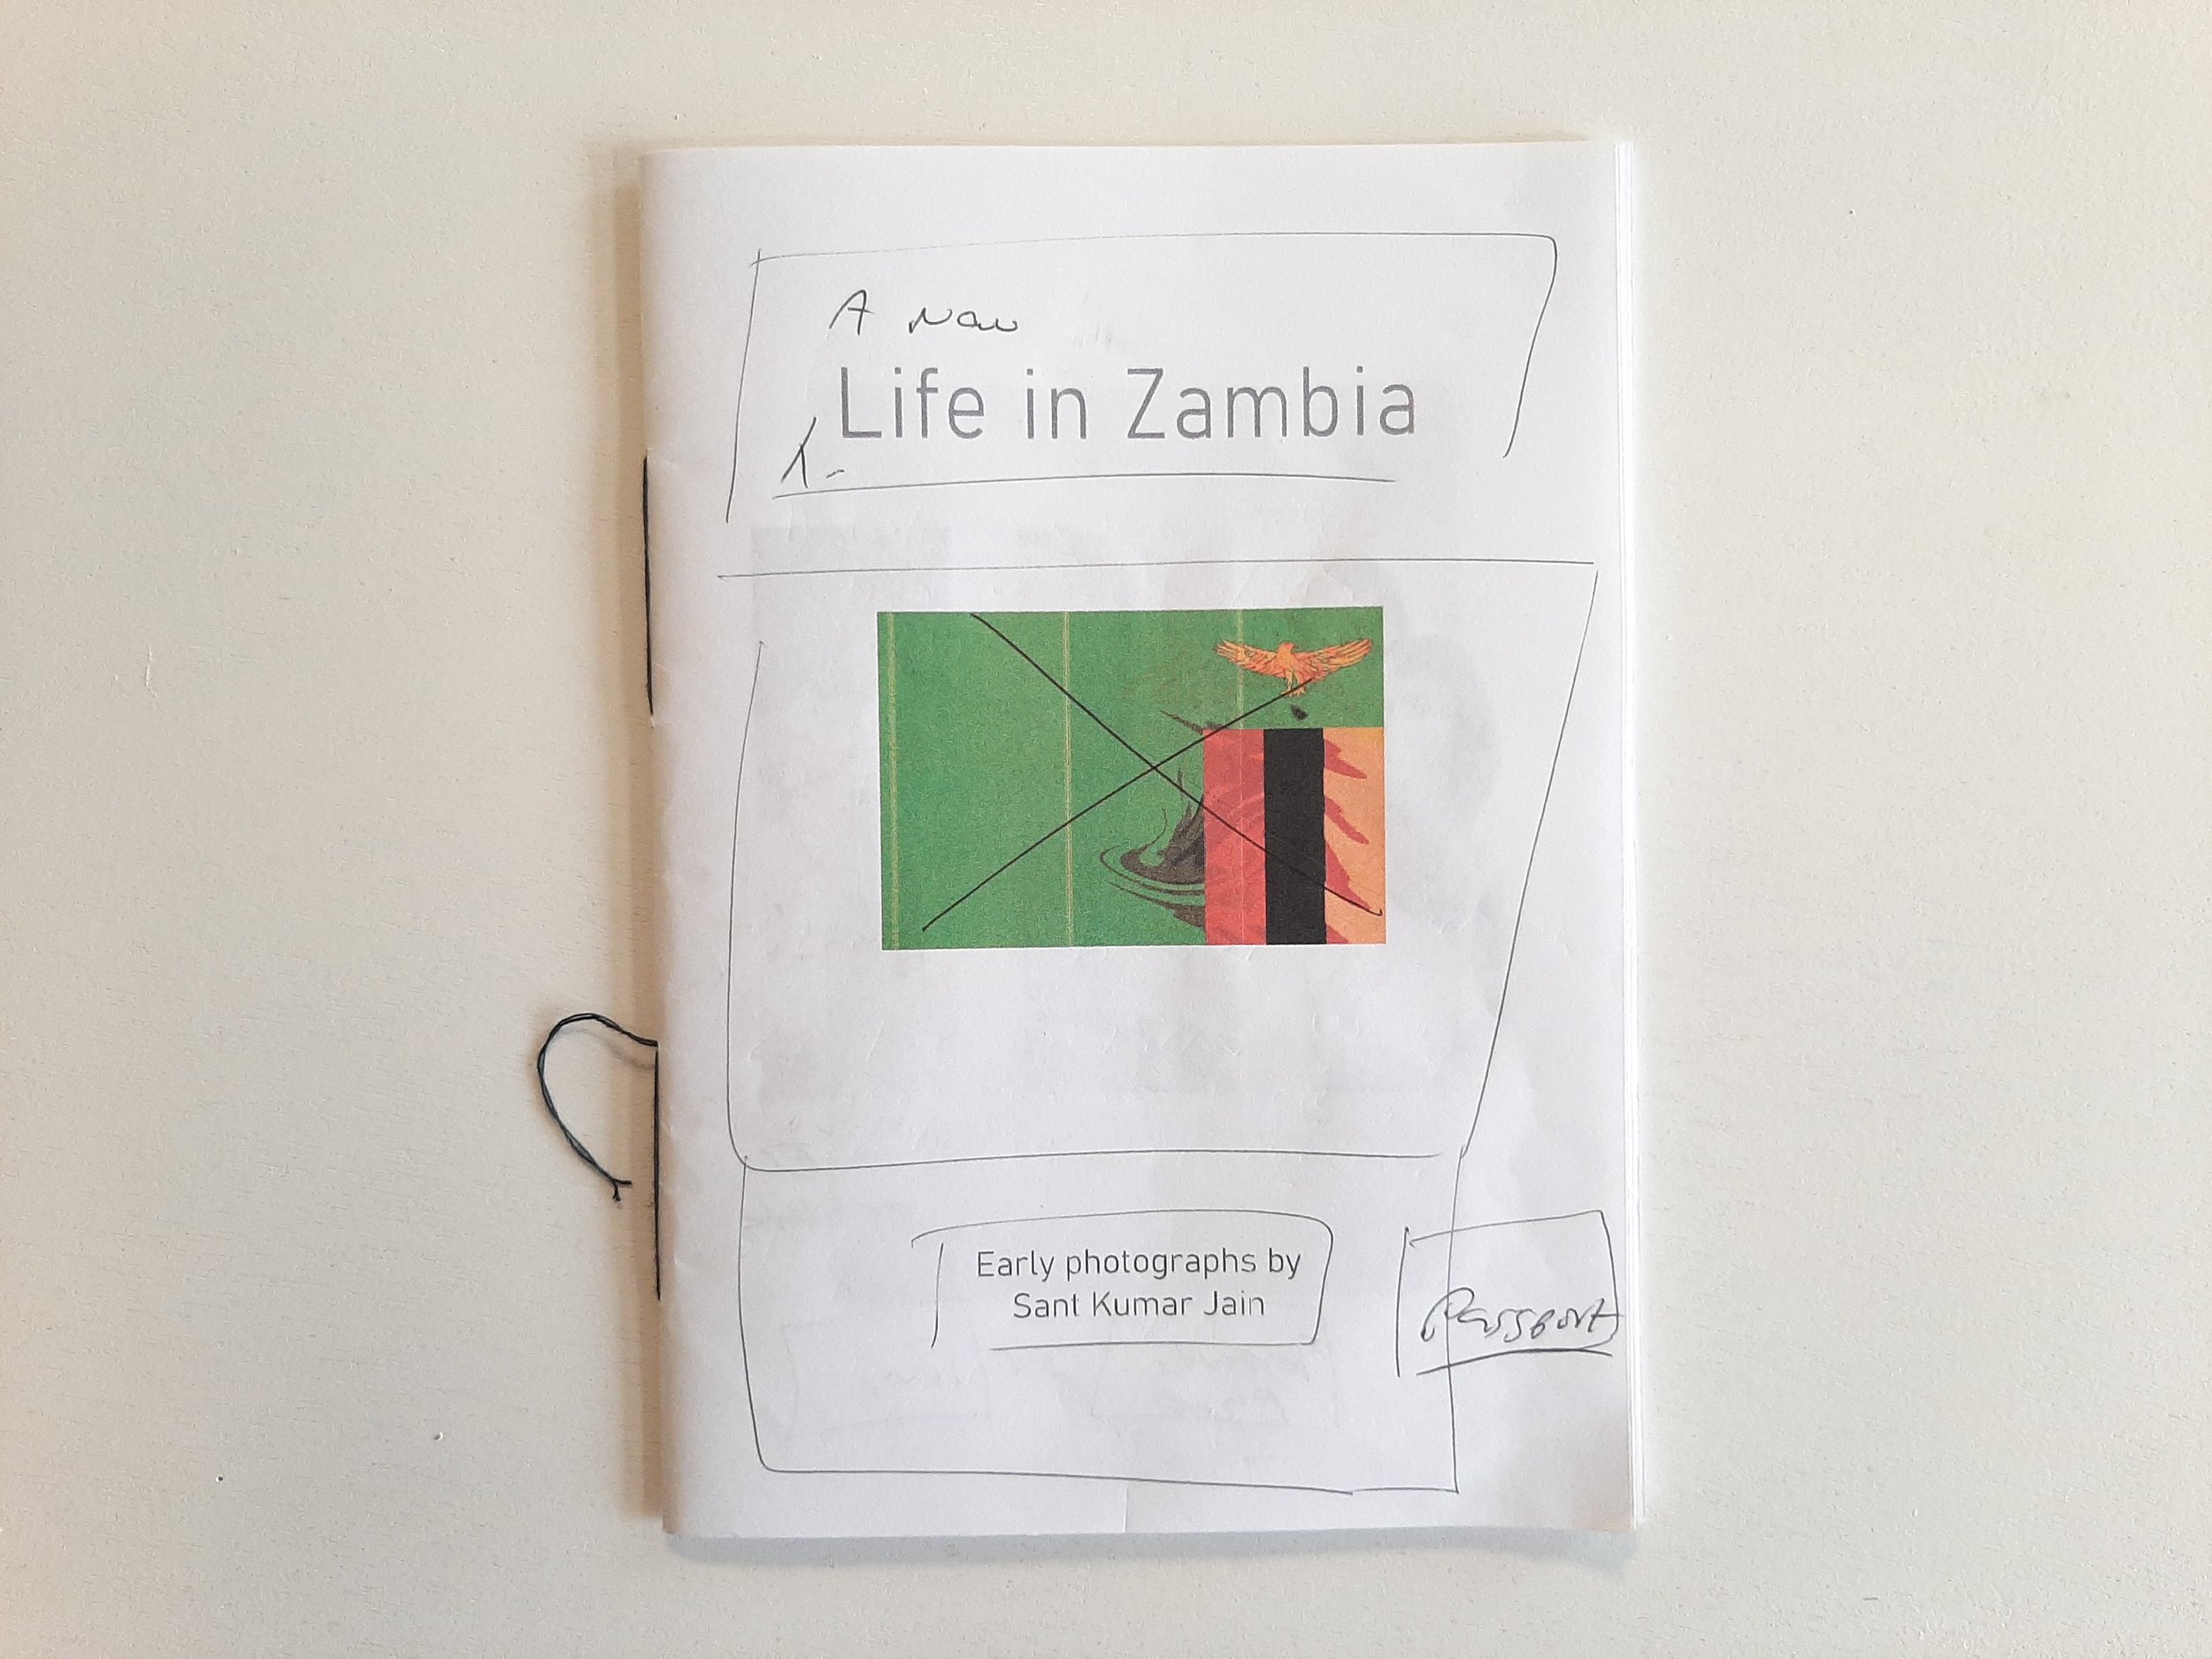 Making ZAMBIA PHOTO BOOK